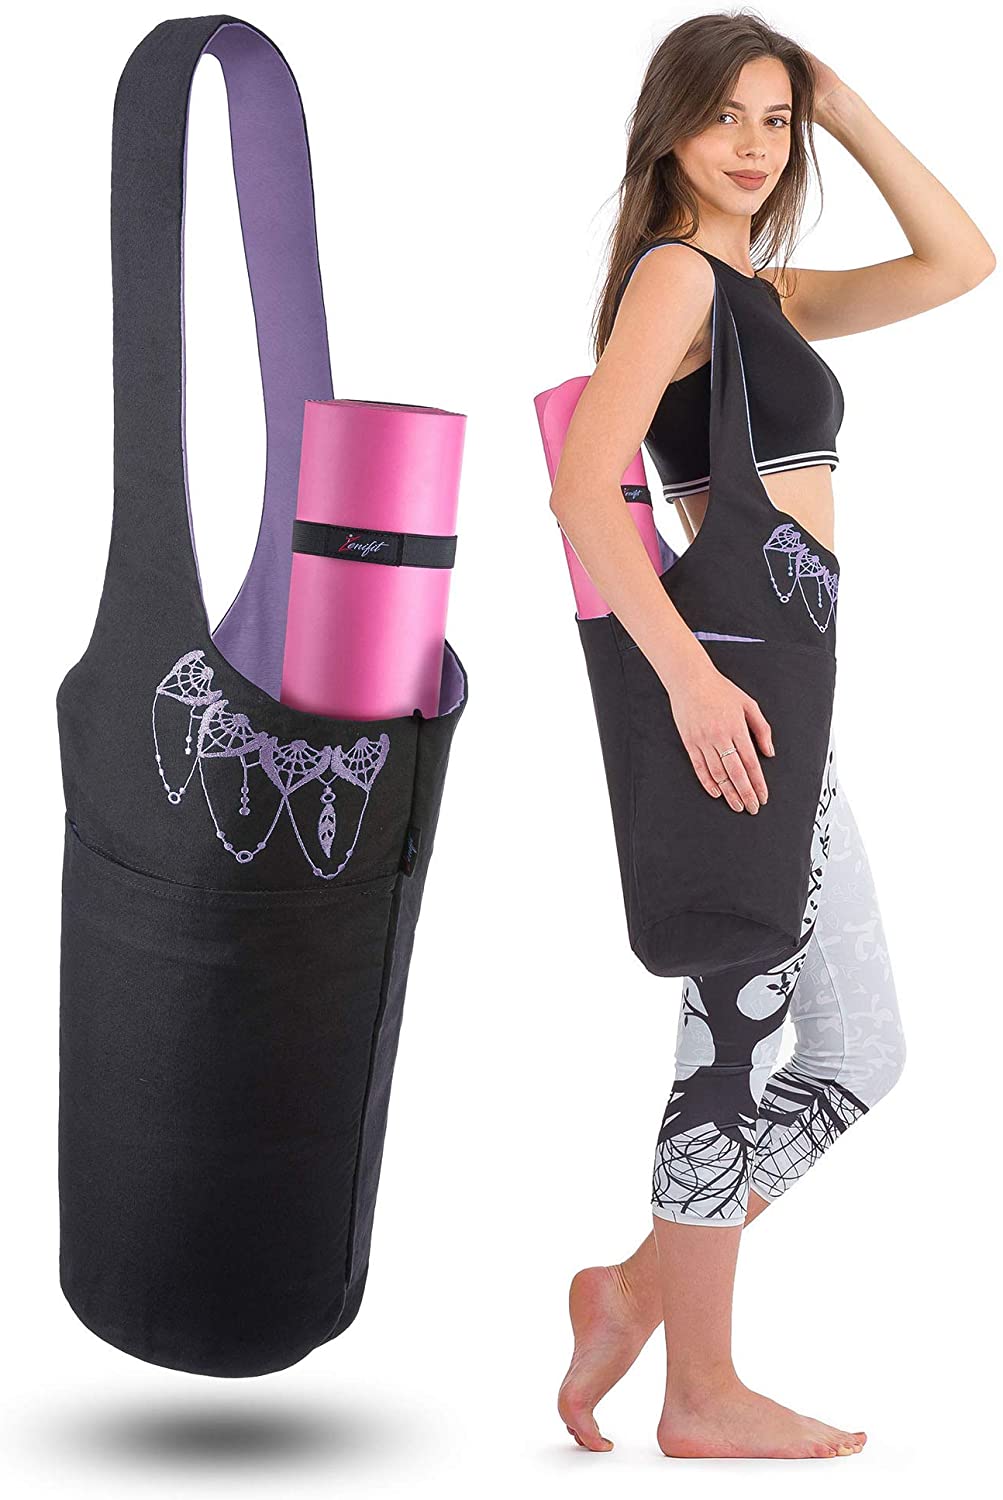 Esterilla De Yoga Mobiclinic Ey-01 Antideslizante Flexible Negro con  Ofertas en Carrefour